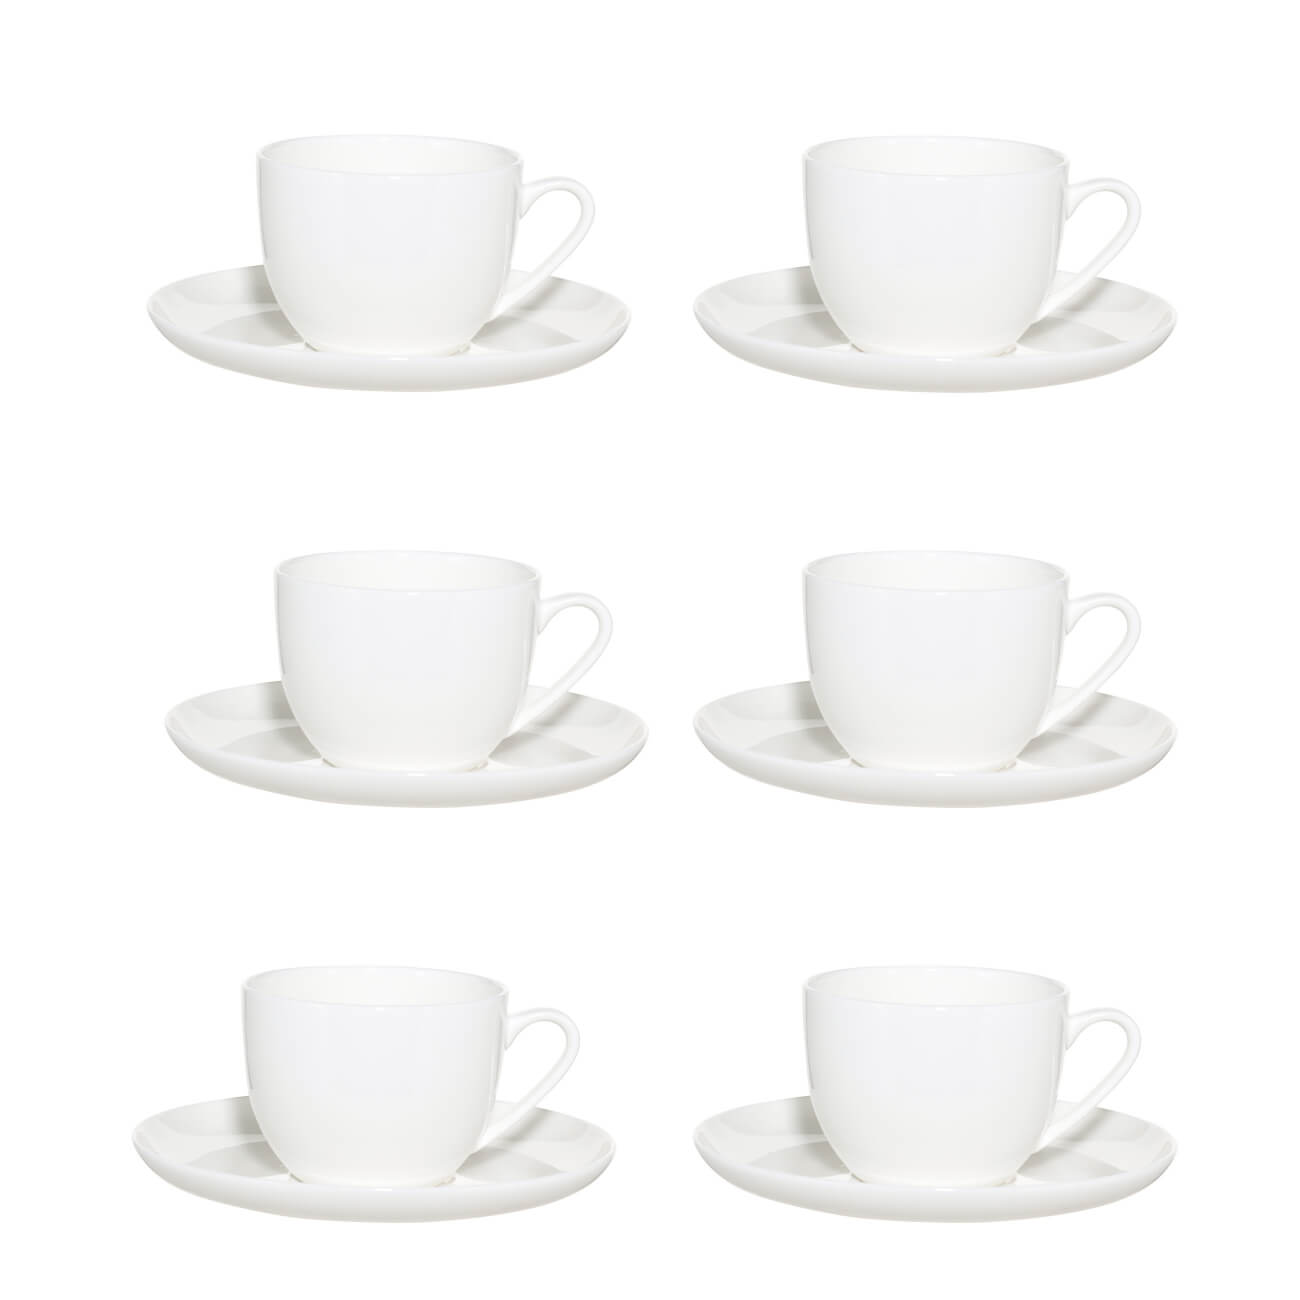 Пара чайная, 6 перс, 12 пр, 250 мл, фарфор F, белая, Ideal white пара чайная gipfel blanche чашка и блюдце